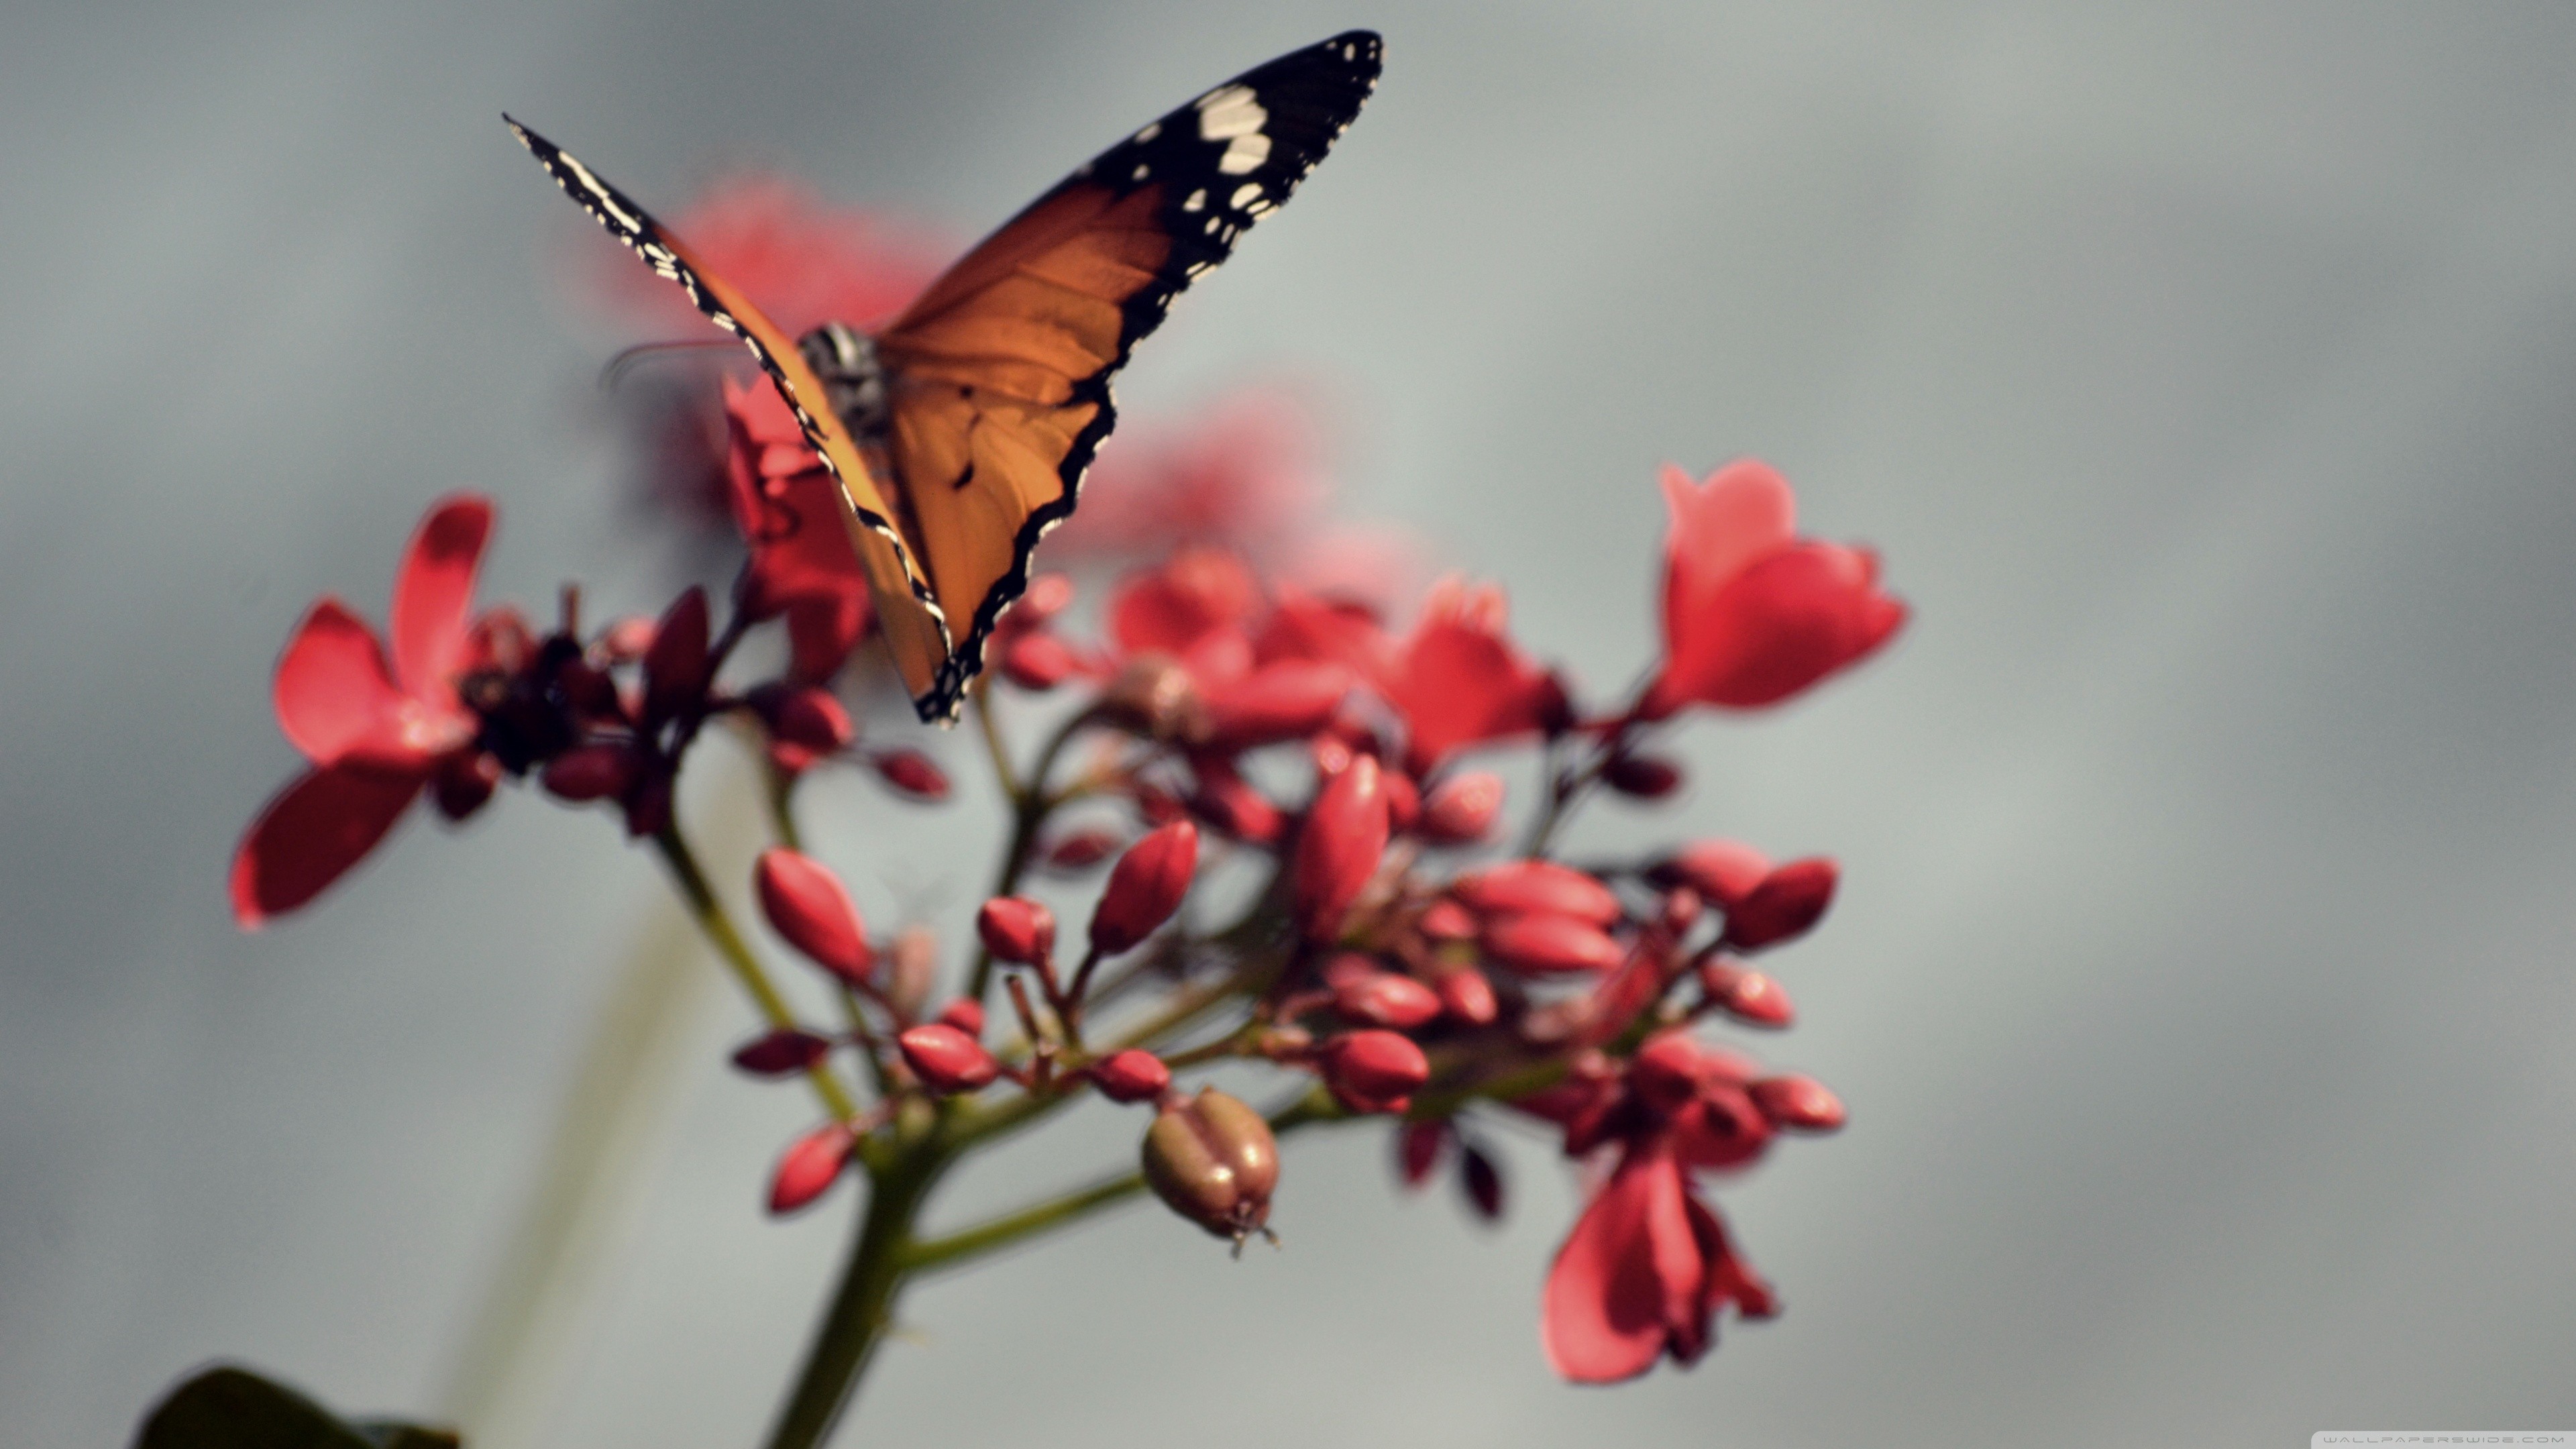 Красивые обои вертикальные на рабочий стол телефона. Бабочка. Бабочки в природе. Бабочка на цветке. Красивые обои на телефон.